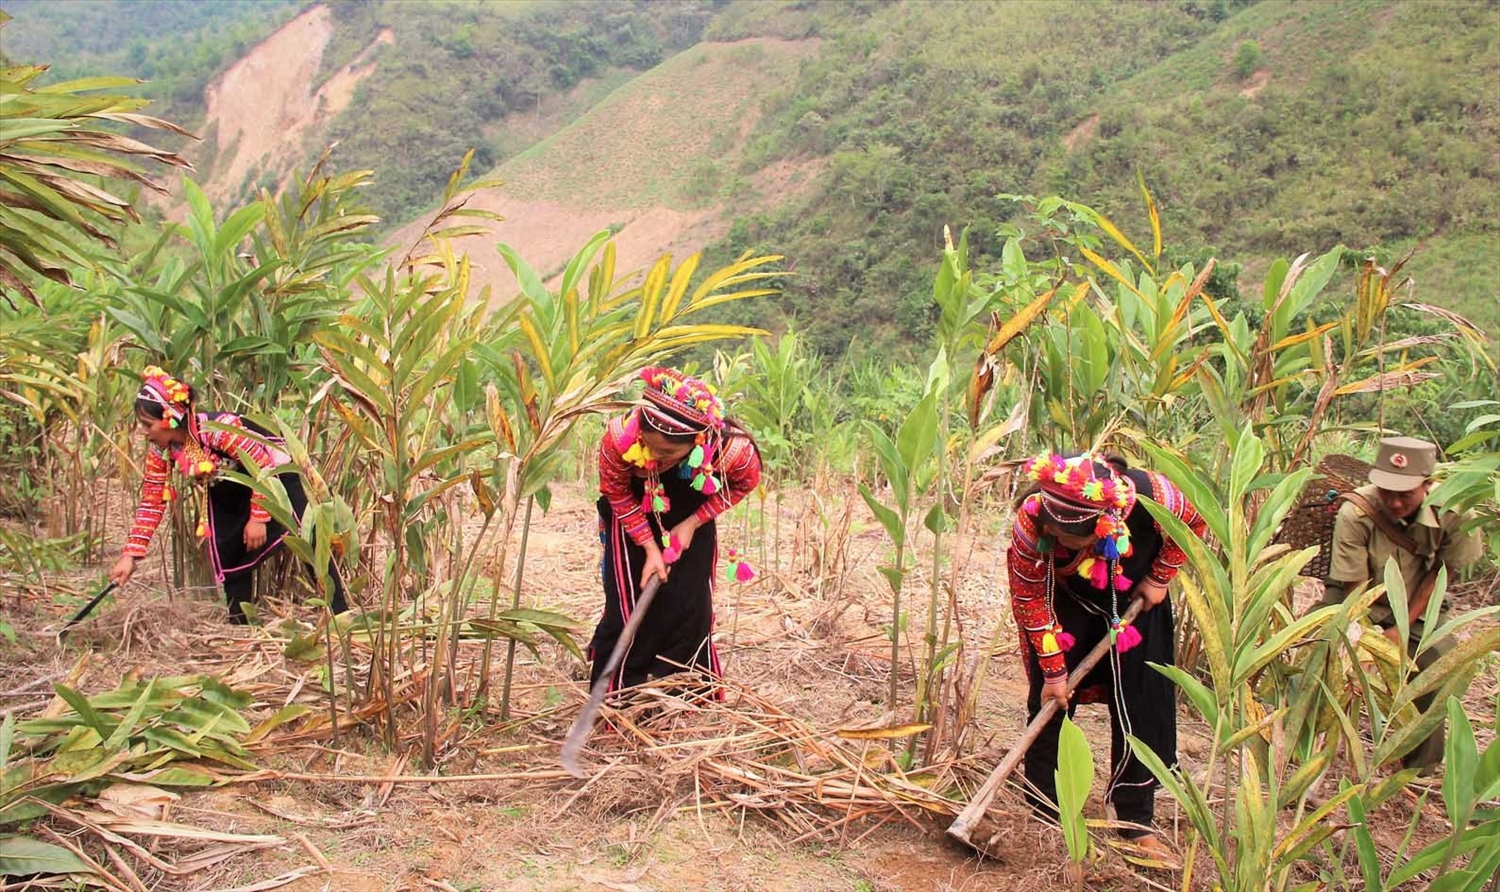 Xã Thu Lũm tiếp tục đẩy mạnh vận động, hỗ trợ bà con phát triển sản xuất theo hướng chuyển đổi cơ cấu cây trồng, vật nuôi nâng cao thu nhập, vươn lên thoát nghèo